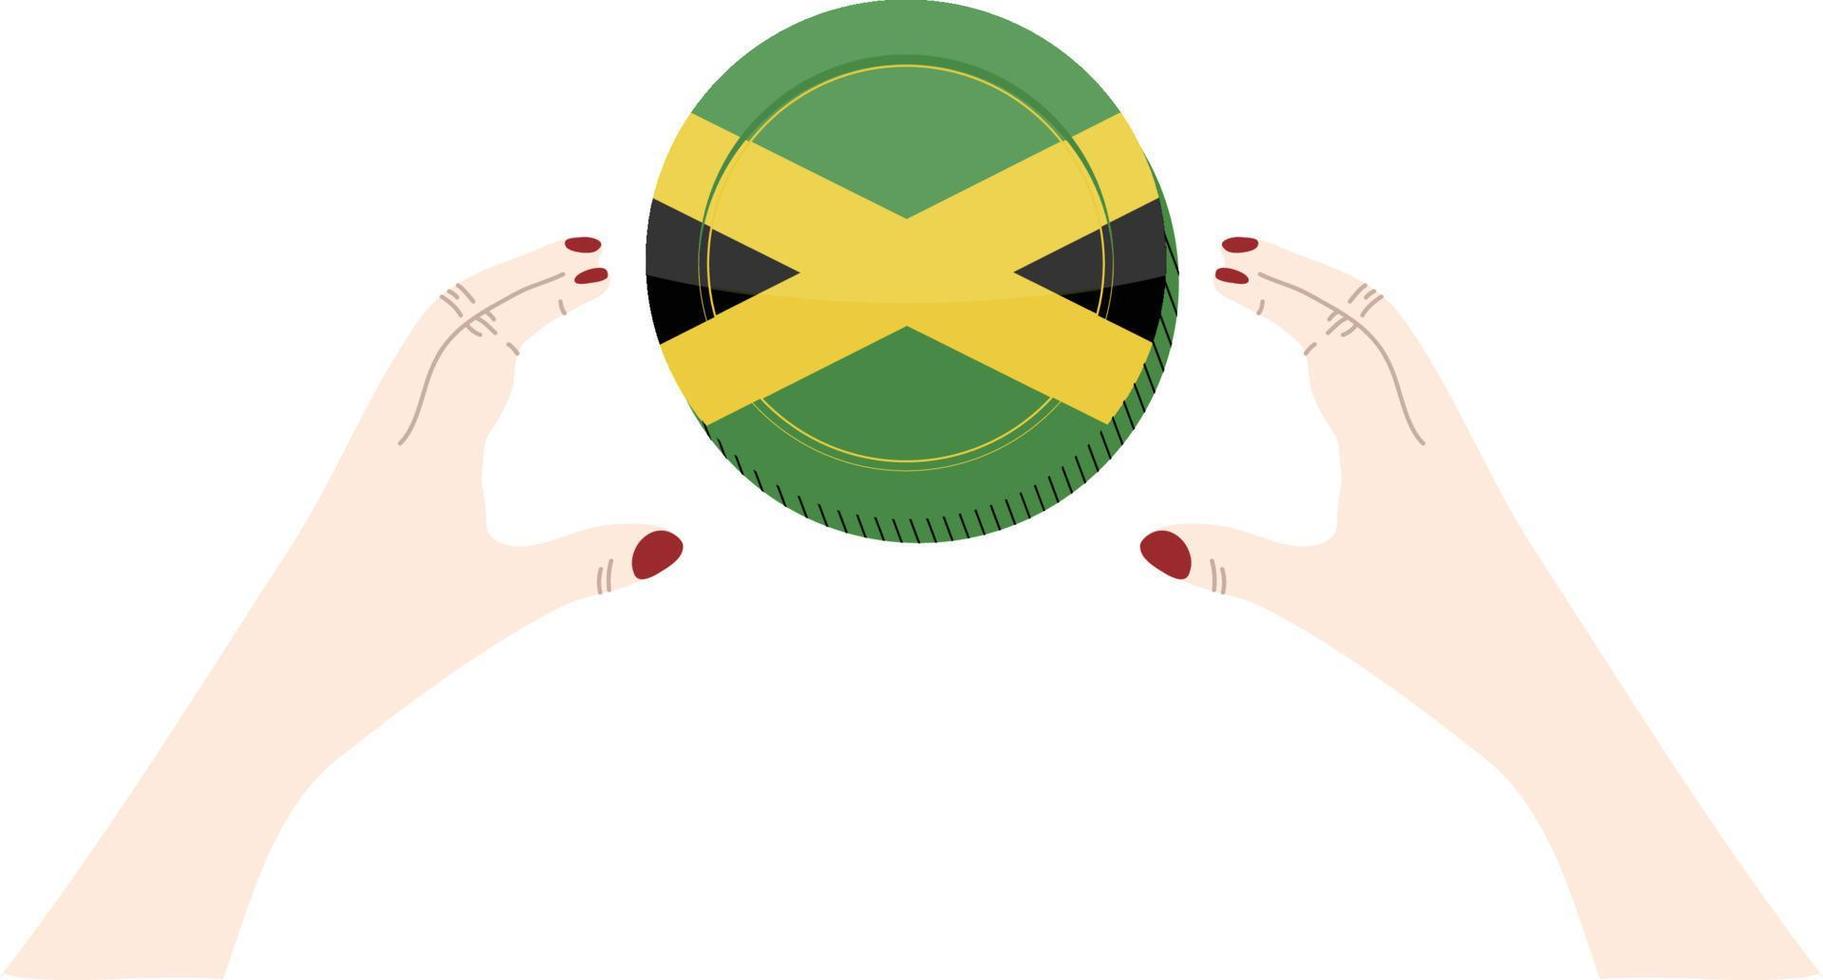 Jamaika-Flagge Vektor handgezeichnete Flagge, Jamaika-Dollar-Vektor handgezeichnete Flagge